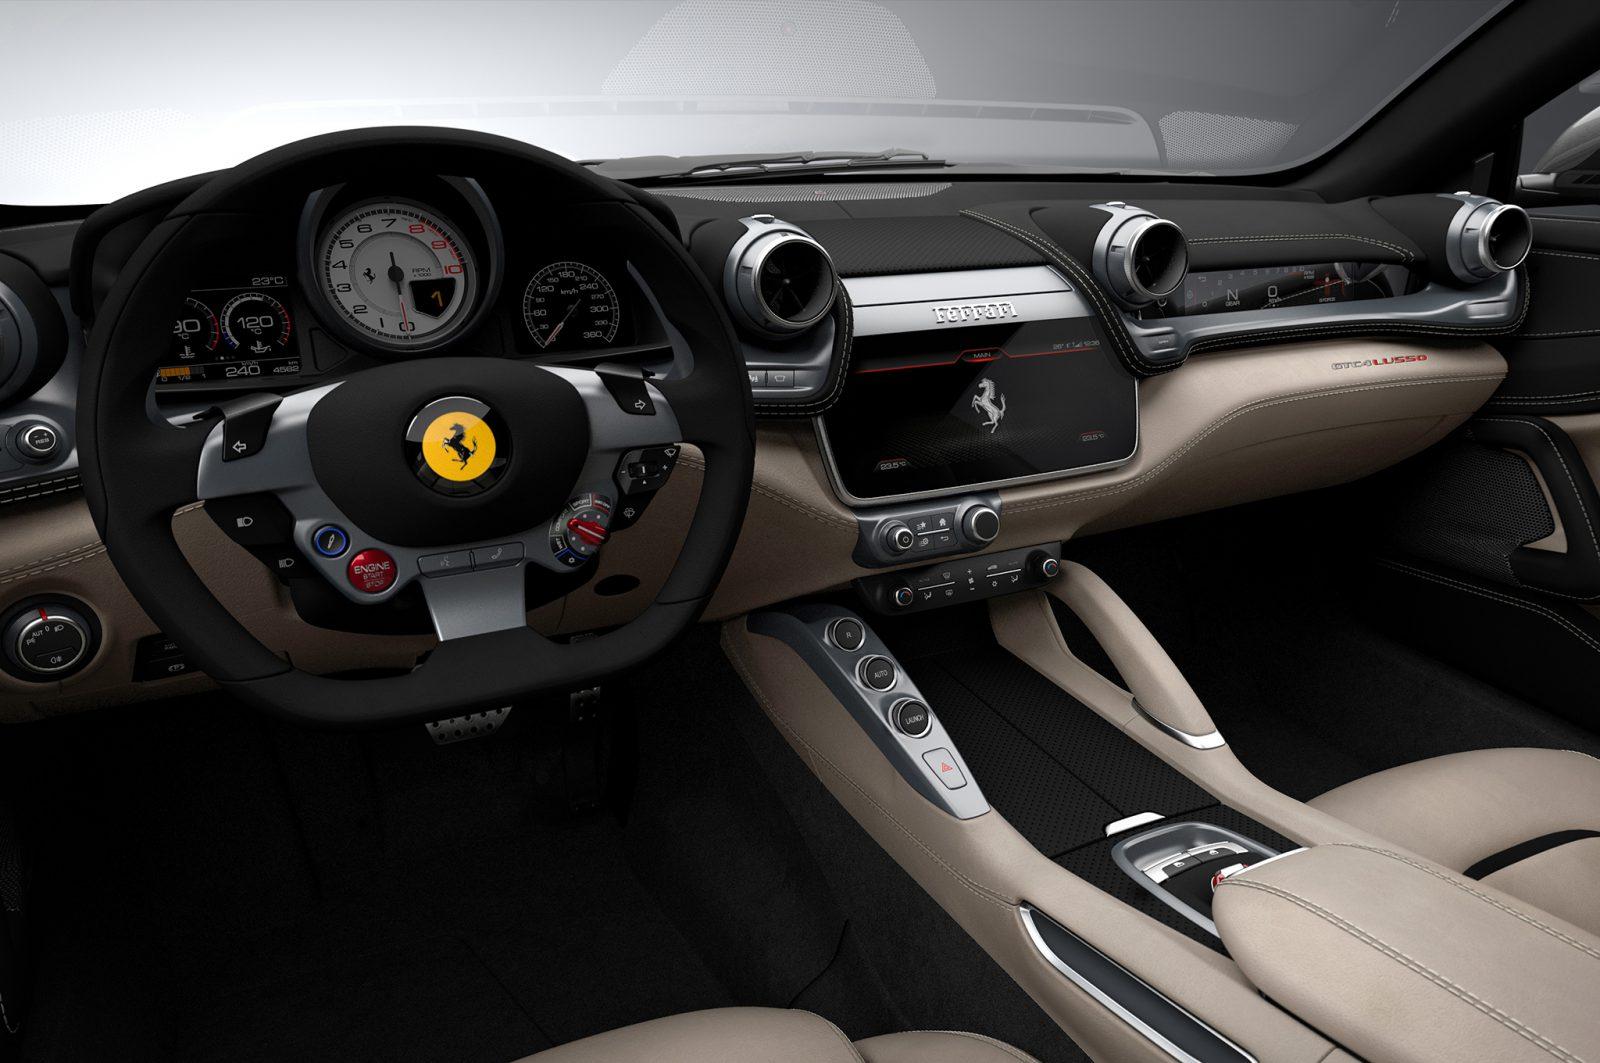 2017 Ferrari-GTC4Lusso interior